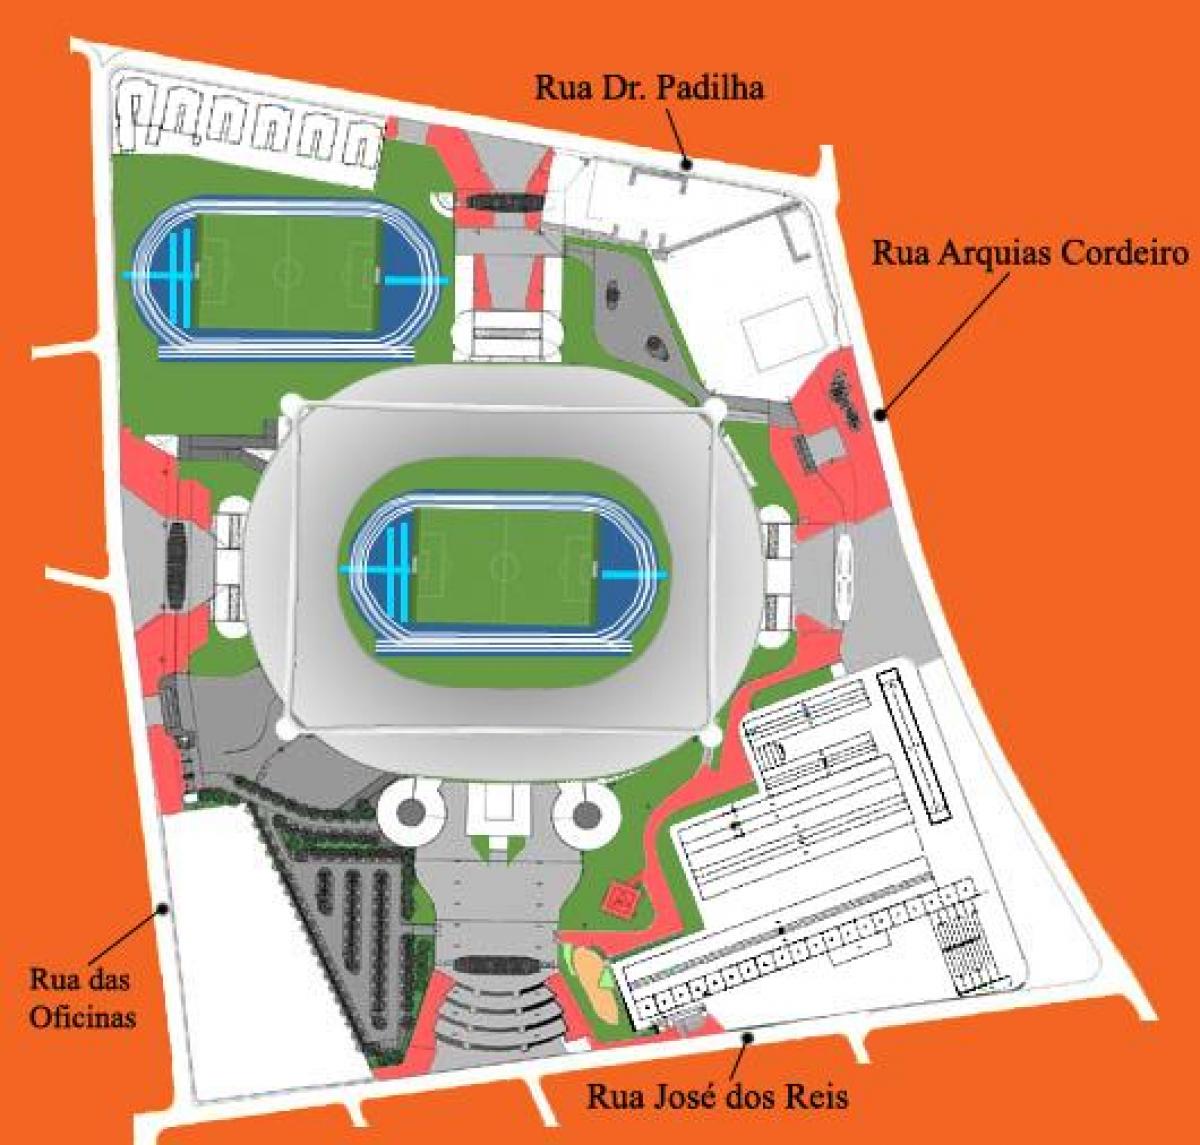 แผนที่ของสนามกีฬา Engenhão